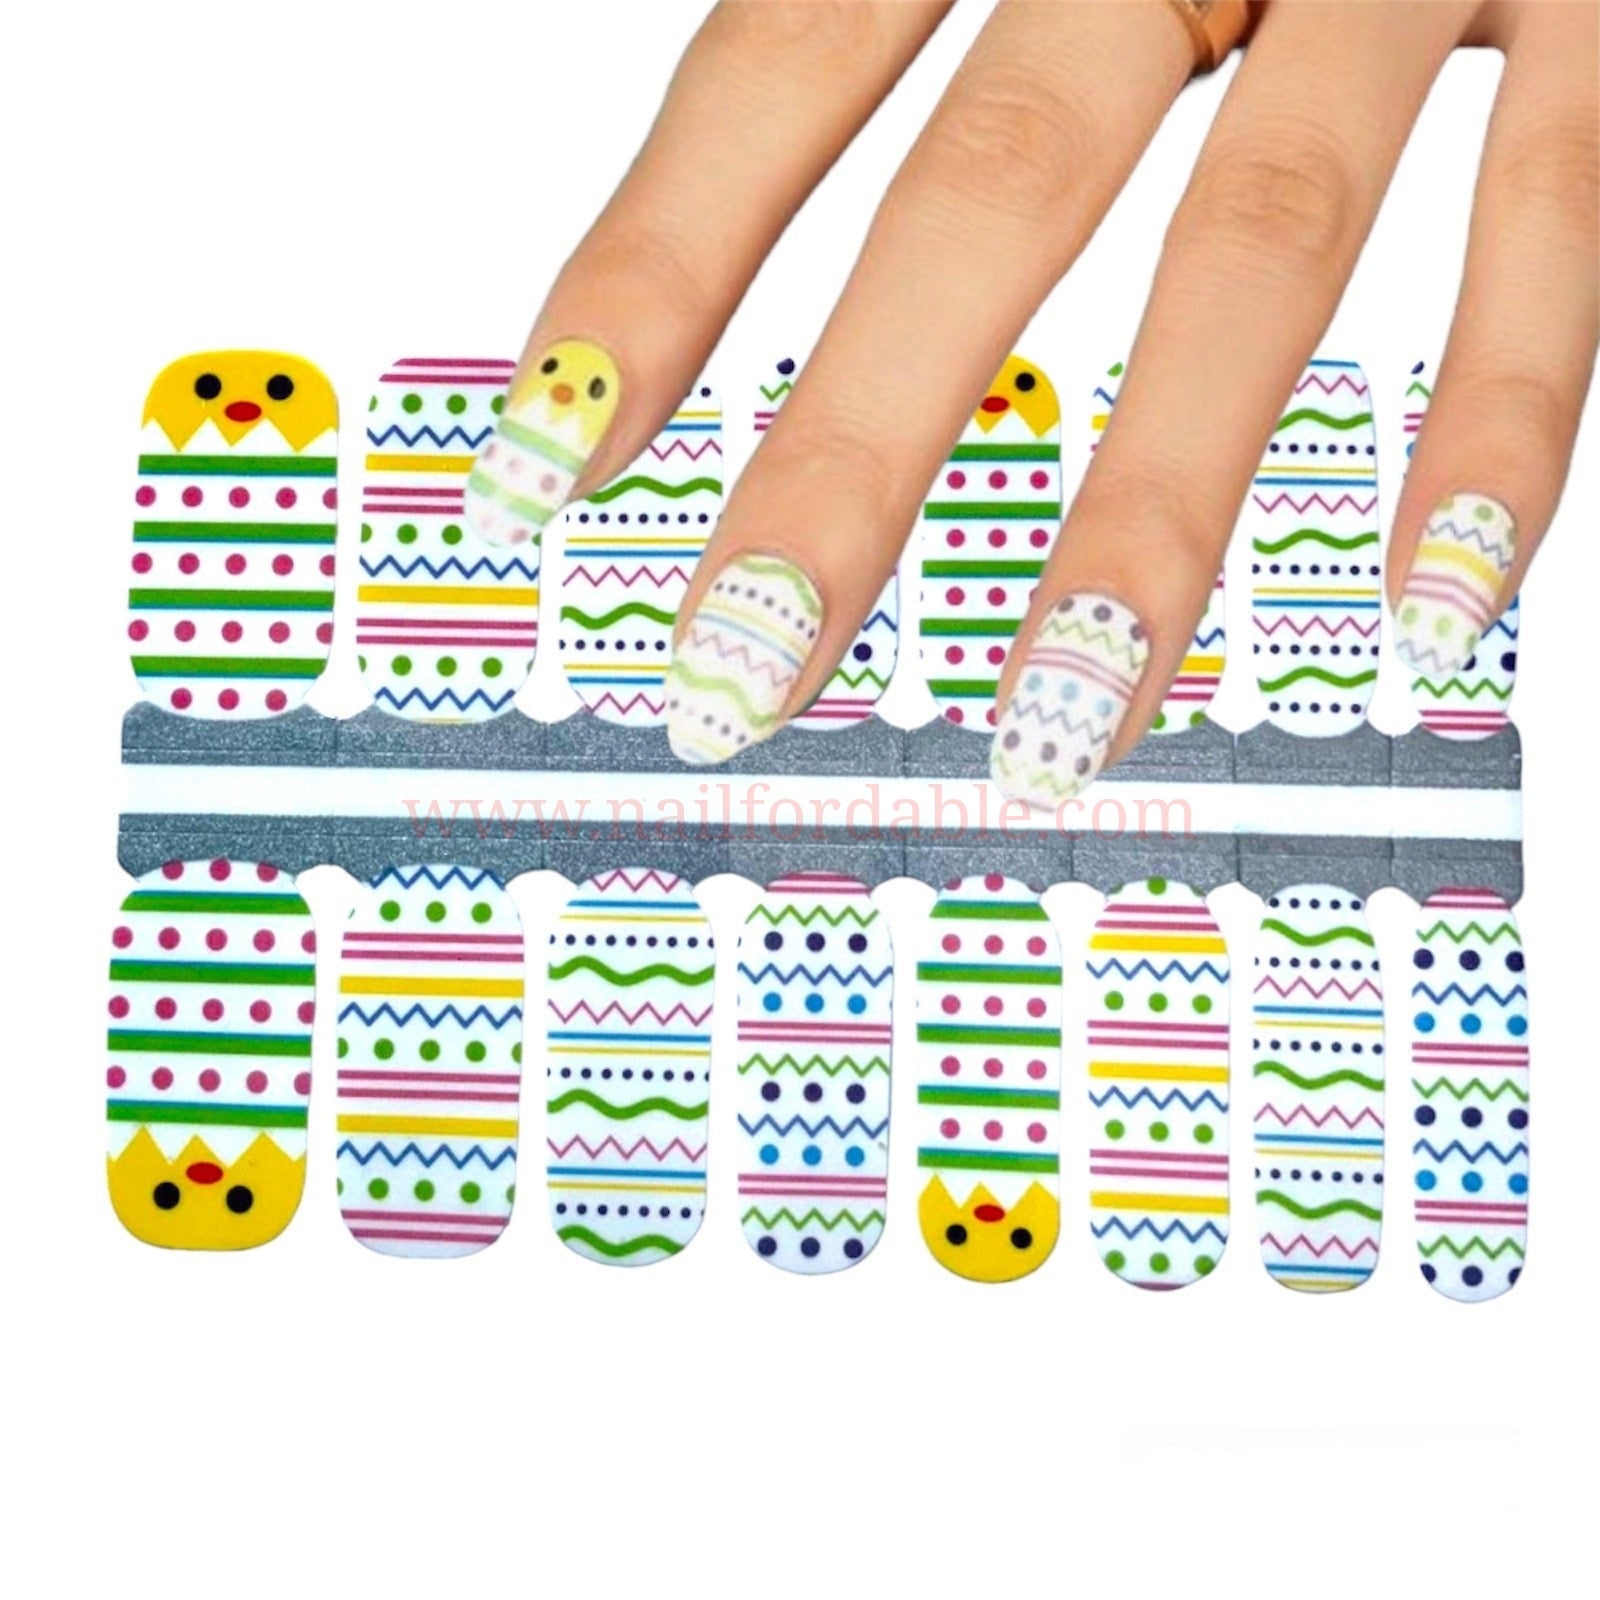 Egg-cited | Nail Wraps | Nail Stickers | Nail Strips | Gel Nails | Nail Polish Wraps - Nailfordable